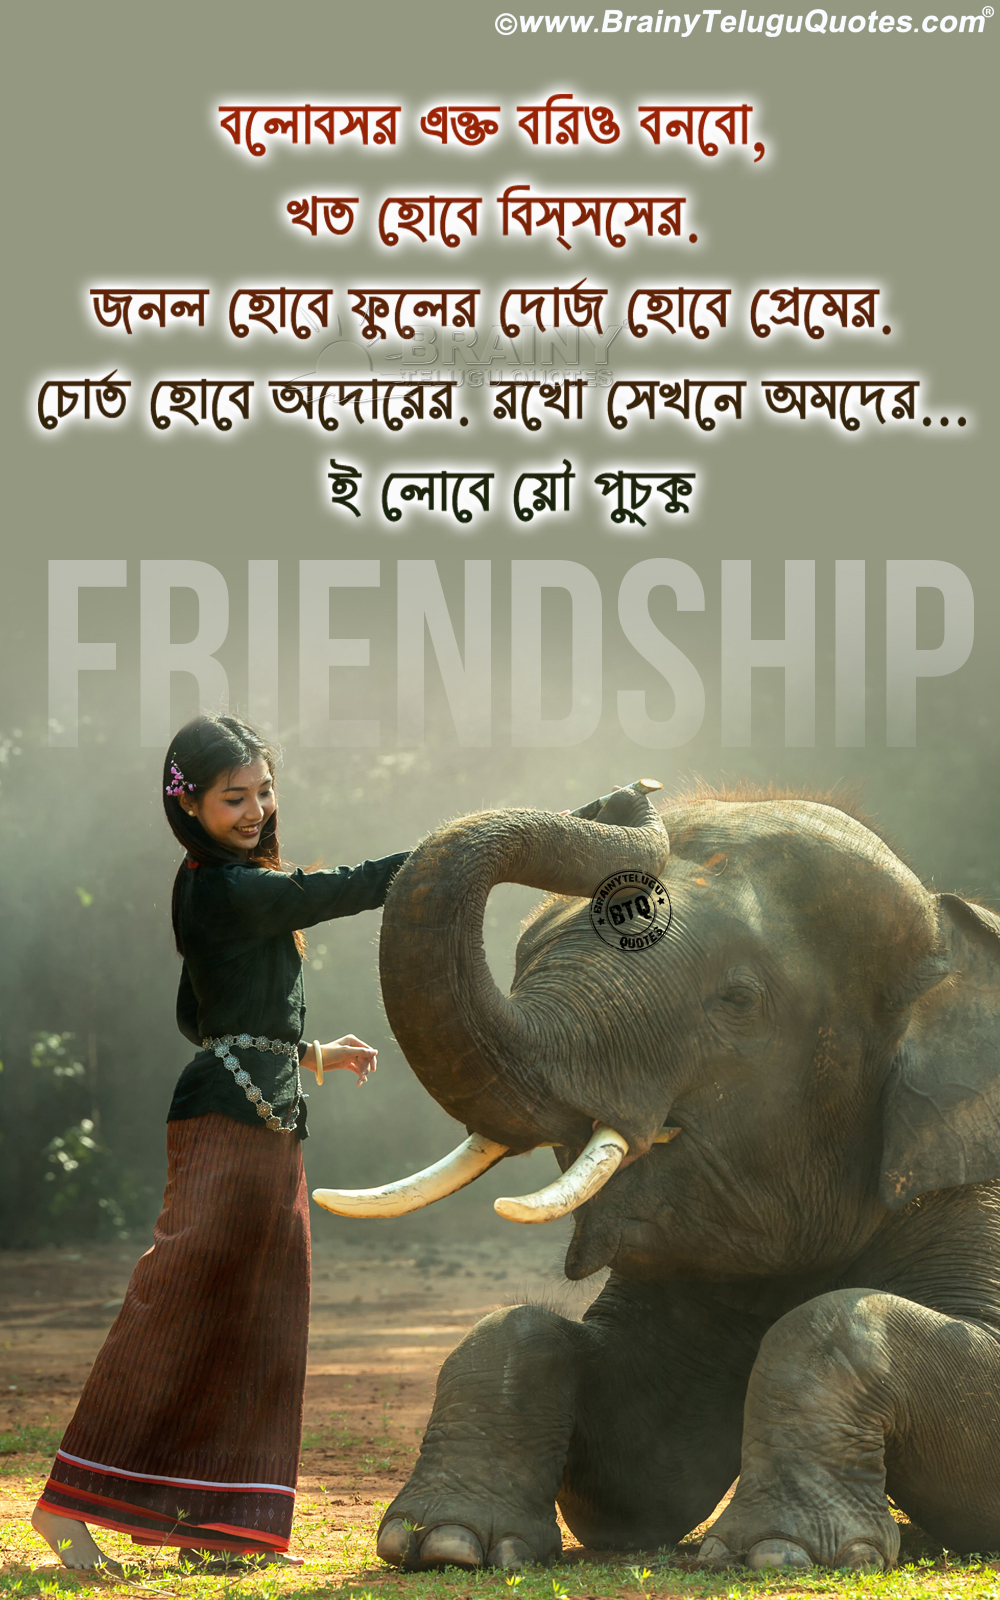 좋은 메시지 바탕 화면,코끼리와 매머드,코끼리,지상파 동물,사진 캡션,인도 코끼리